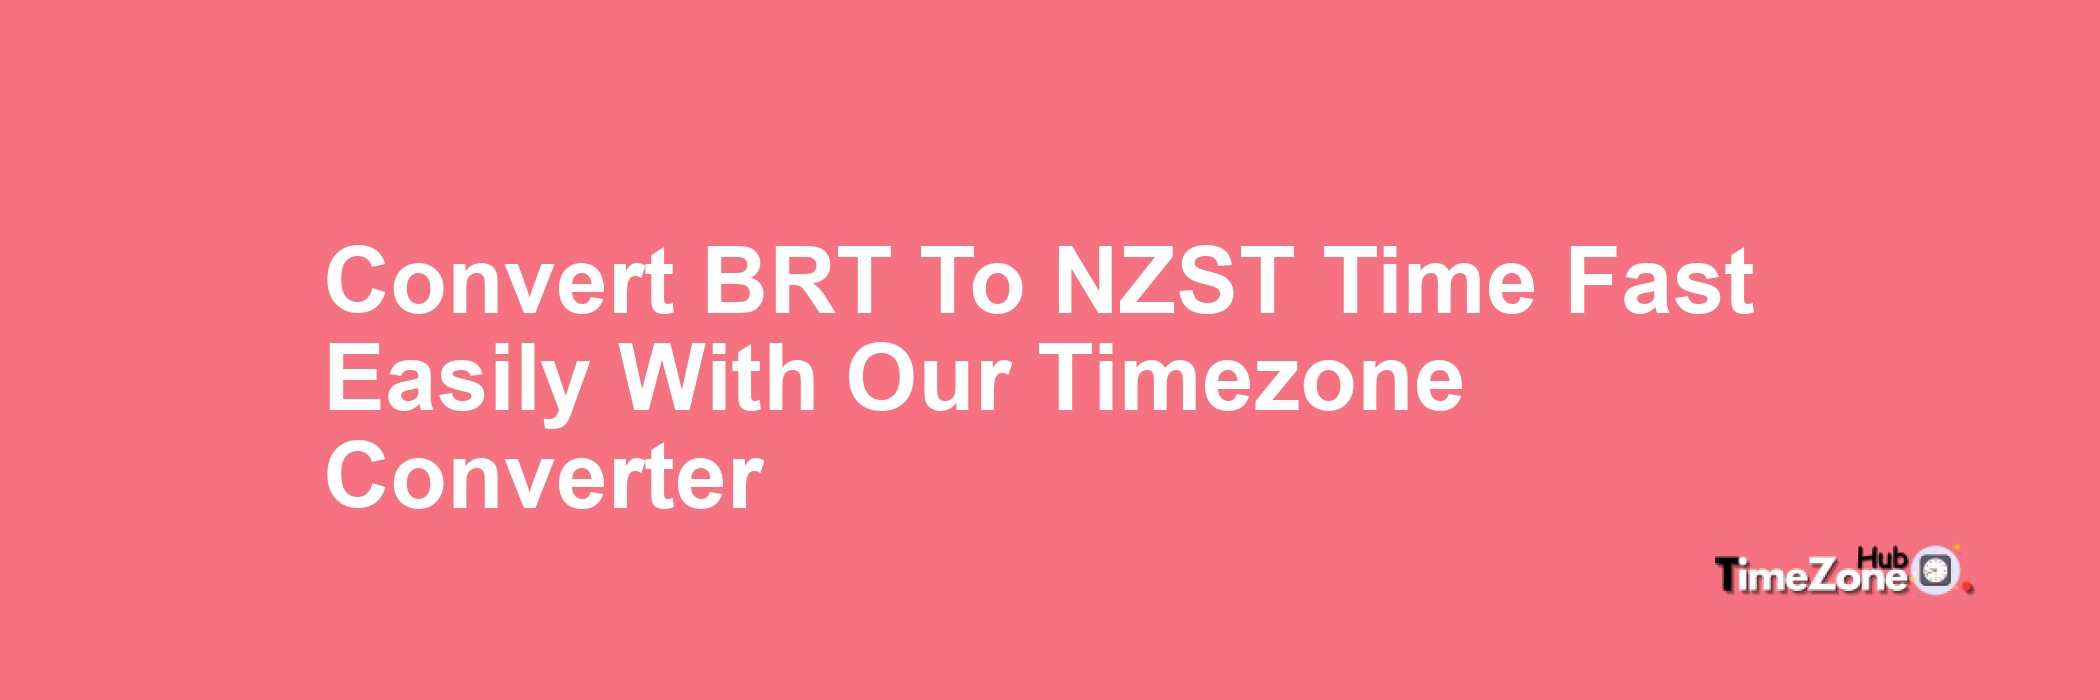 BRT to NZST